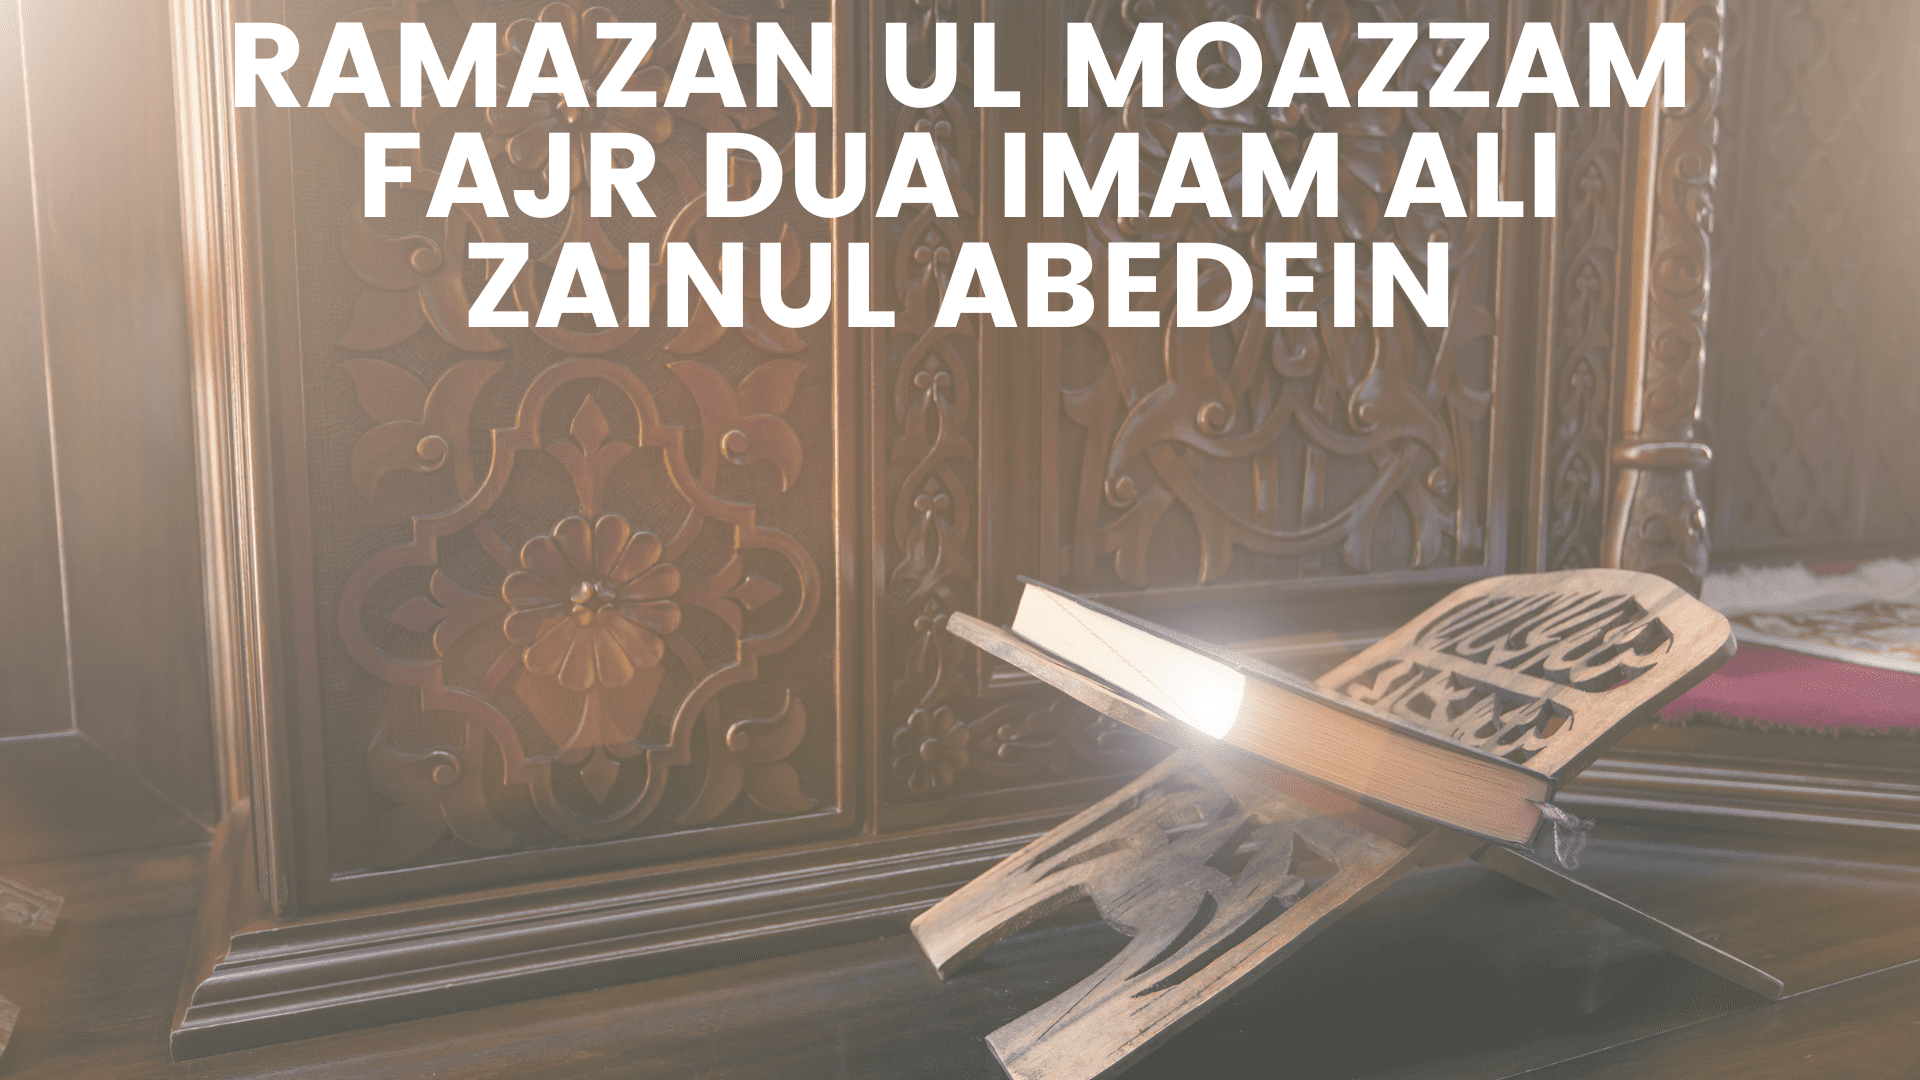 Ramazan ul Moazzam Fajr Dua Imam Ali Zainul Abedein